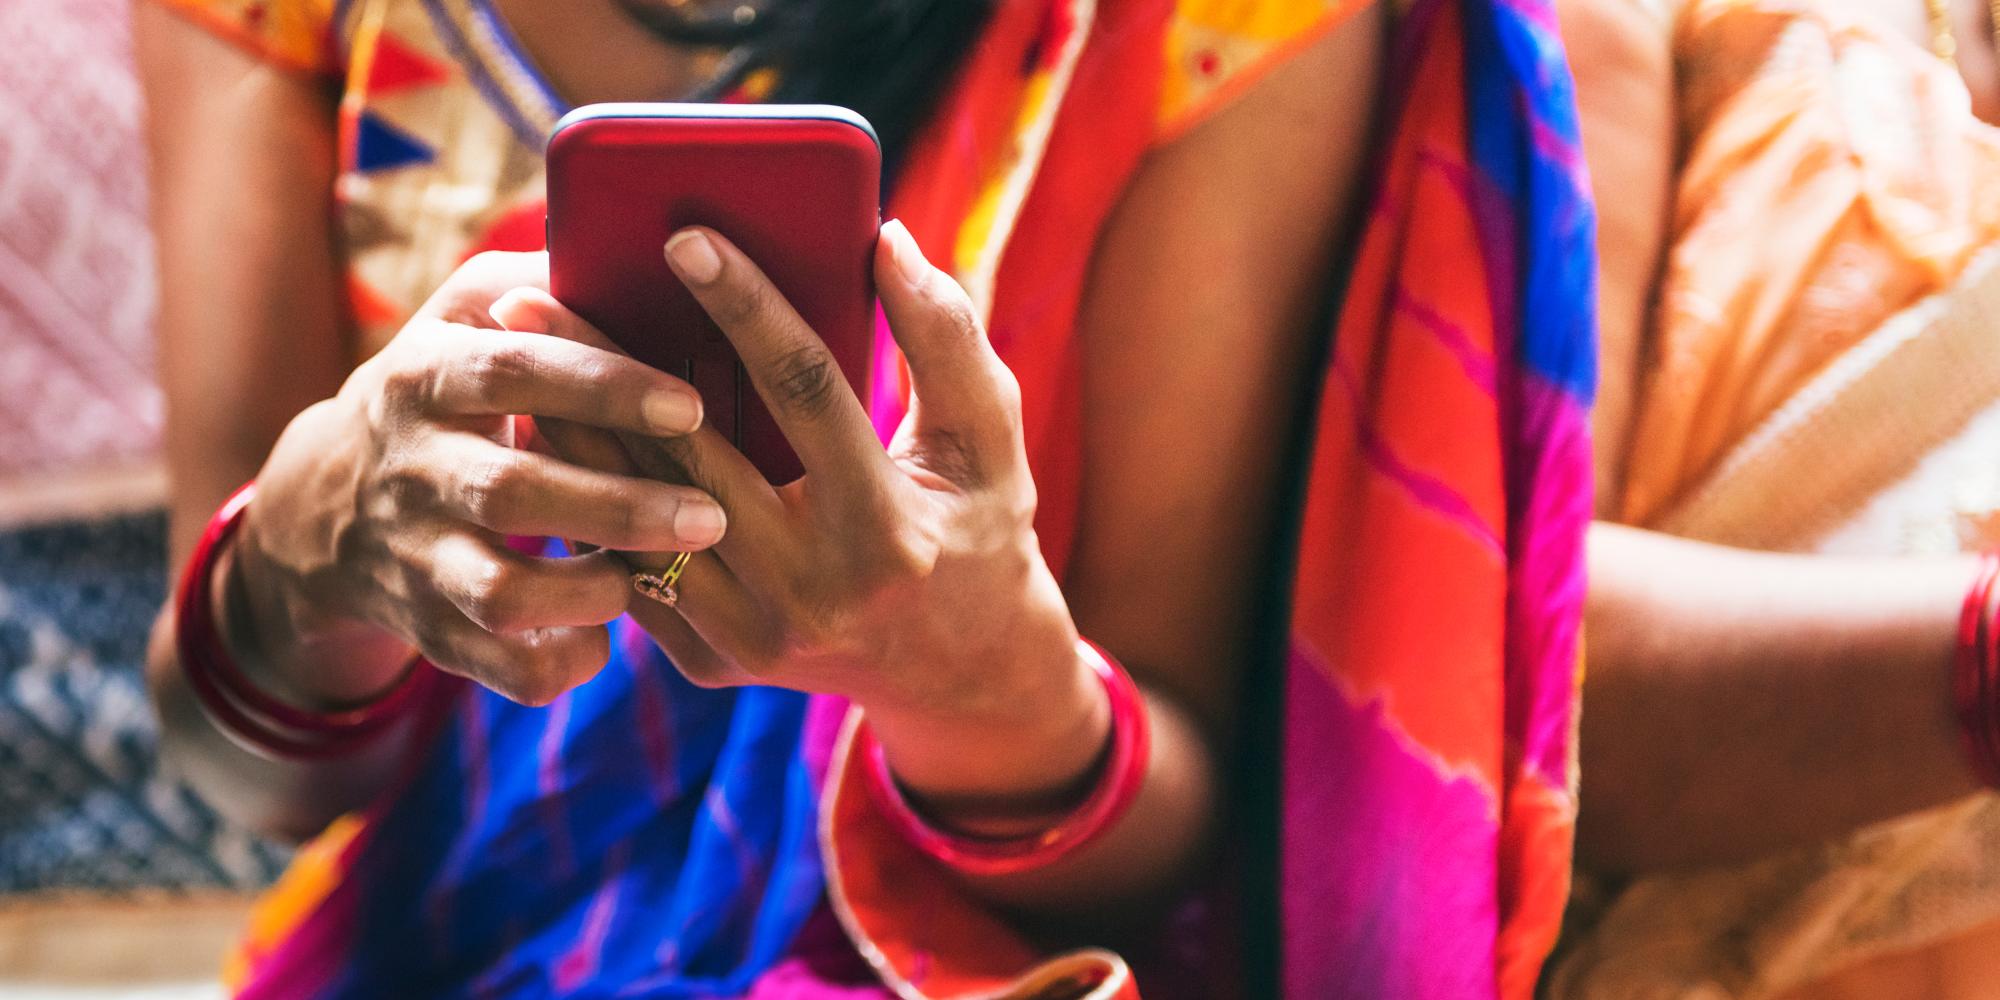 Woman dressed in sari uses mobile phone